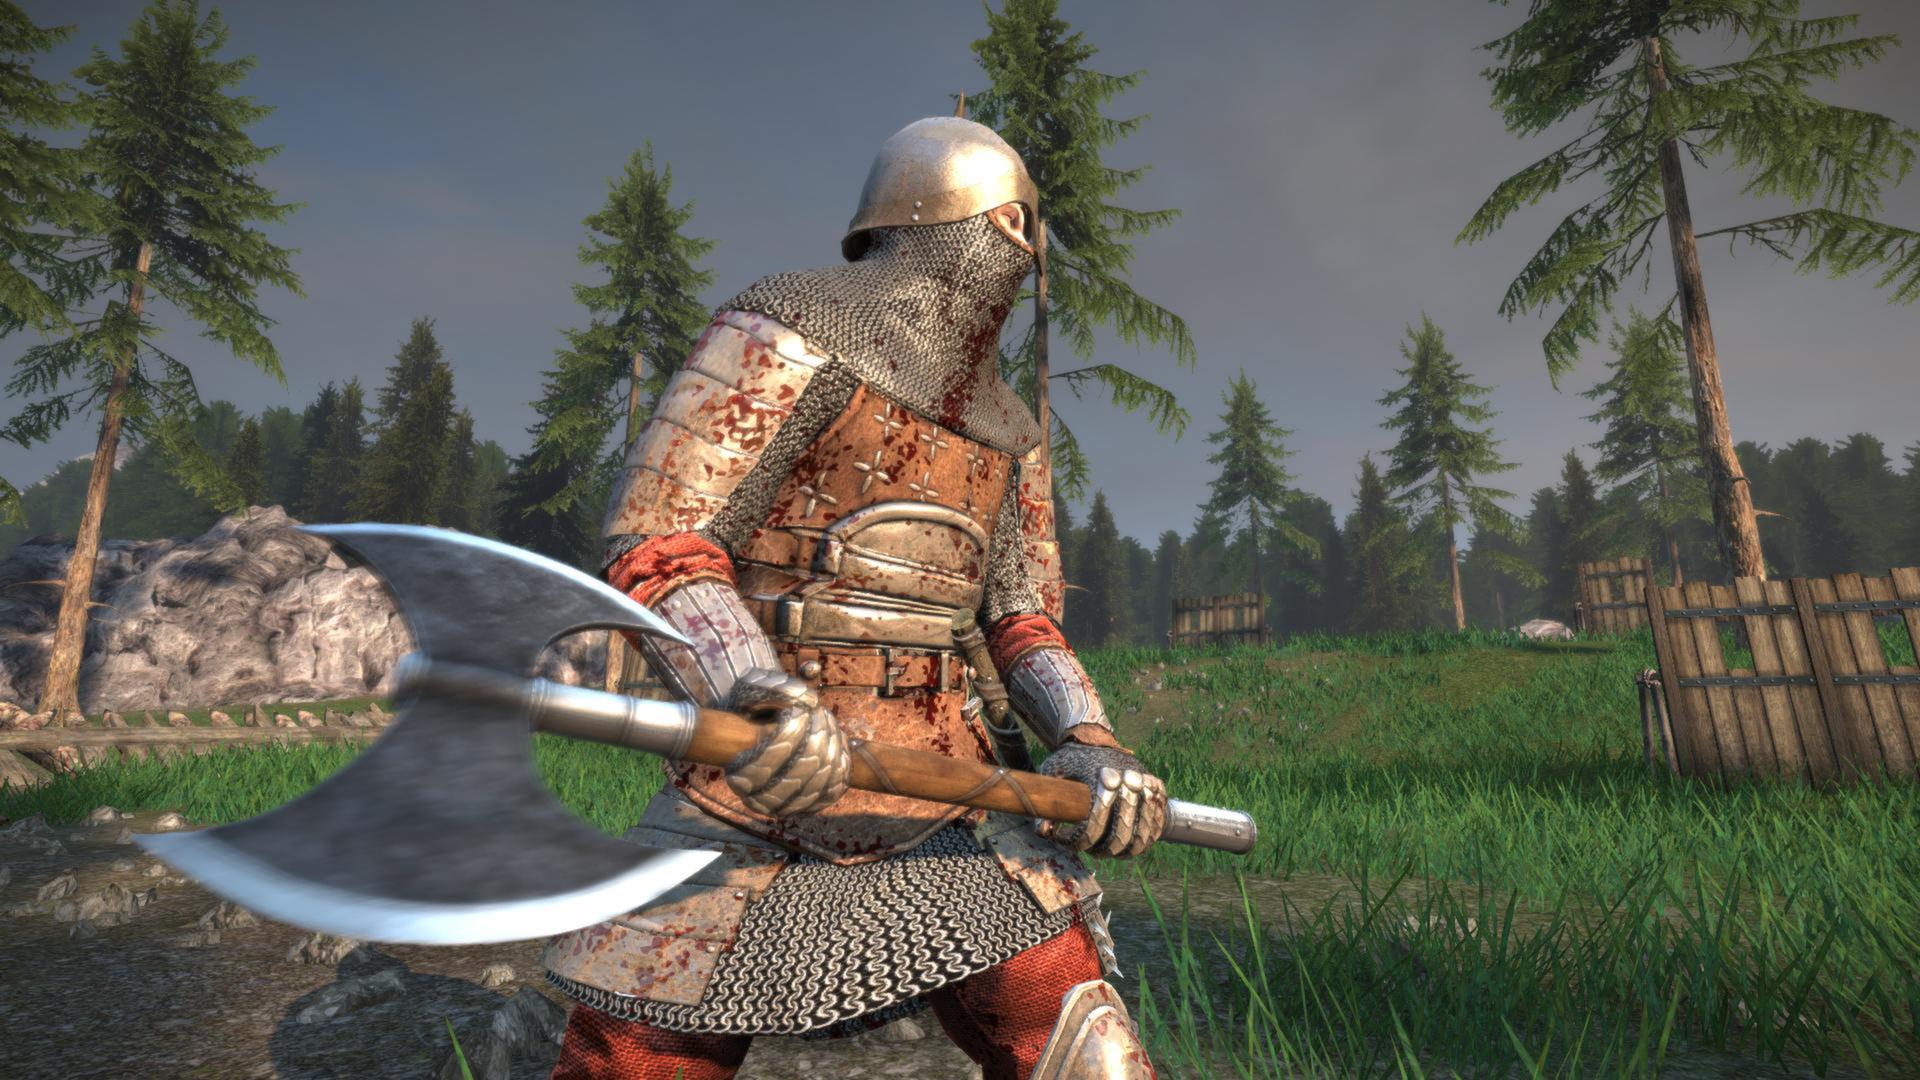 Comprar Chivalry Medieval Warfare Jogo para PC